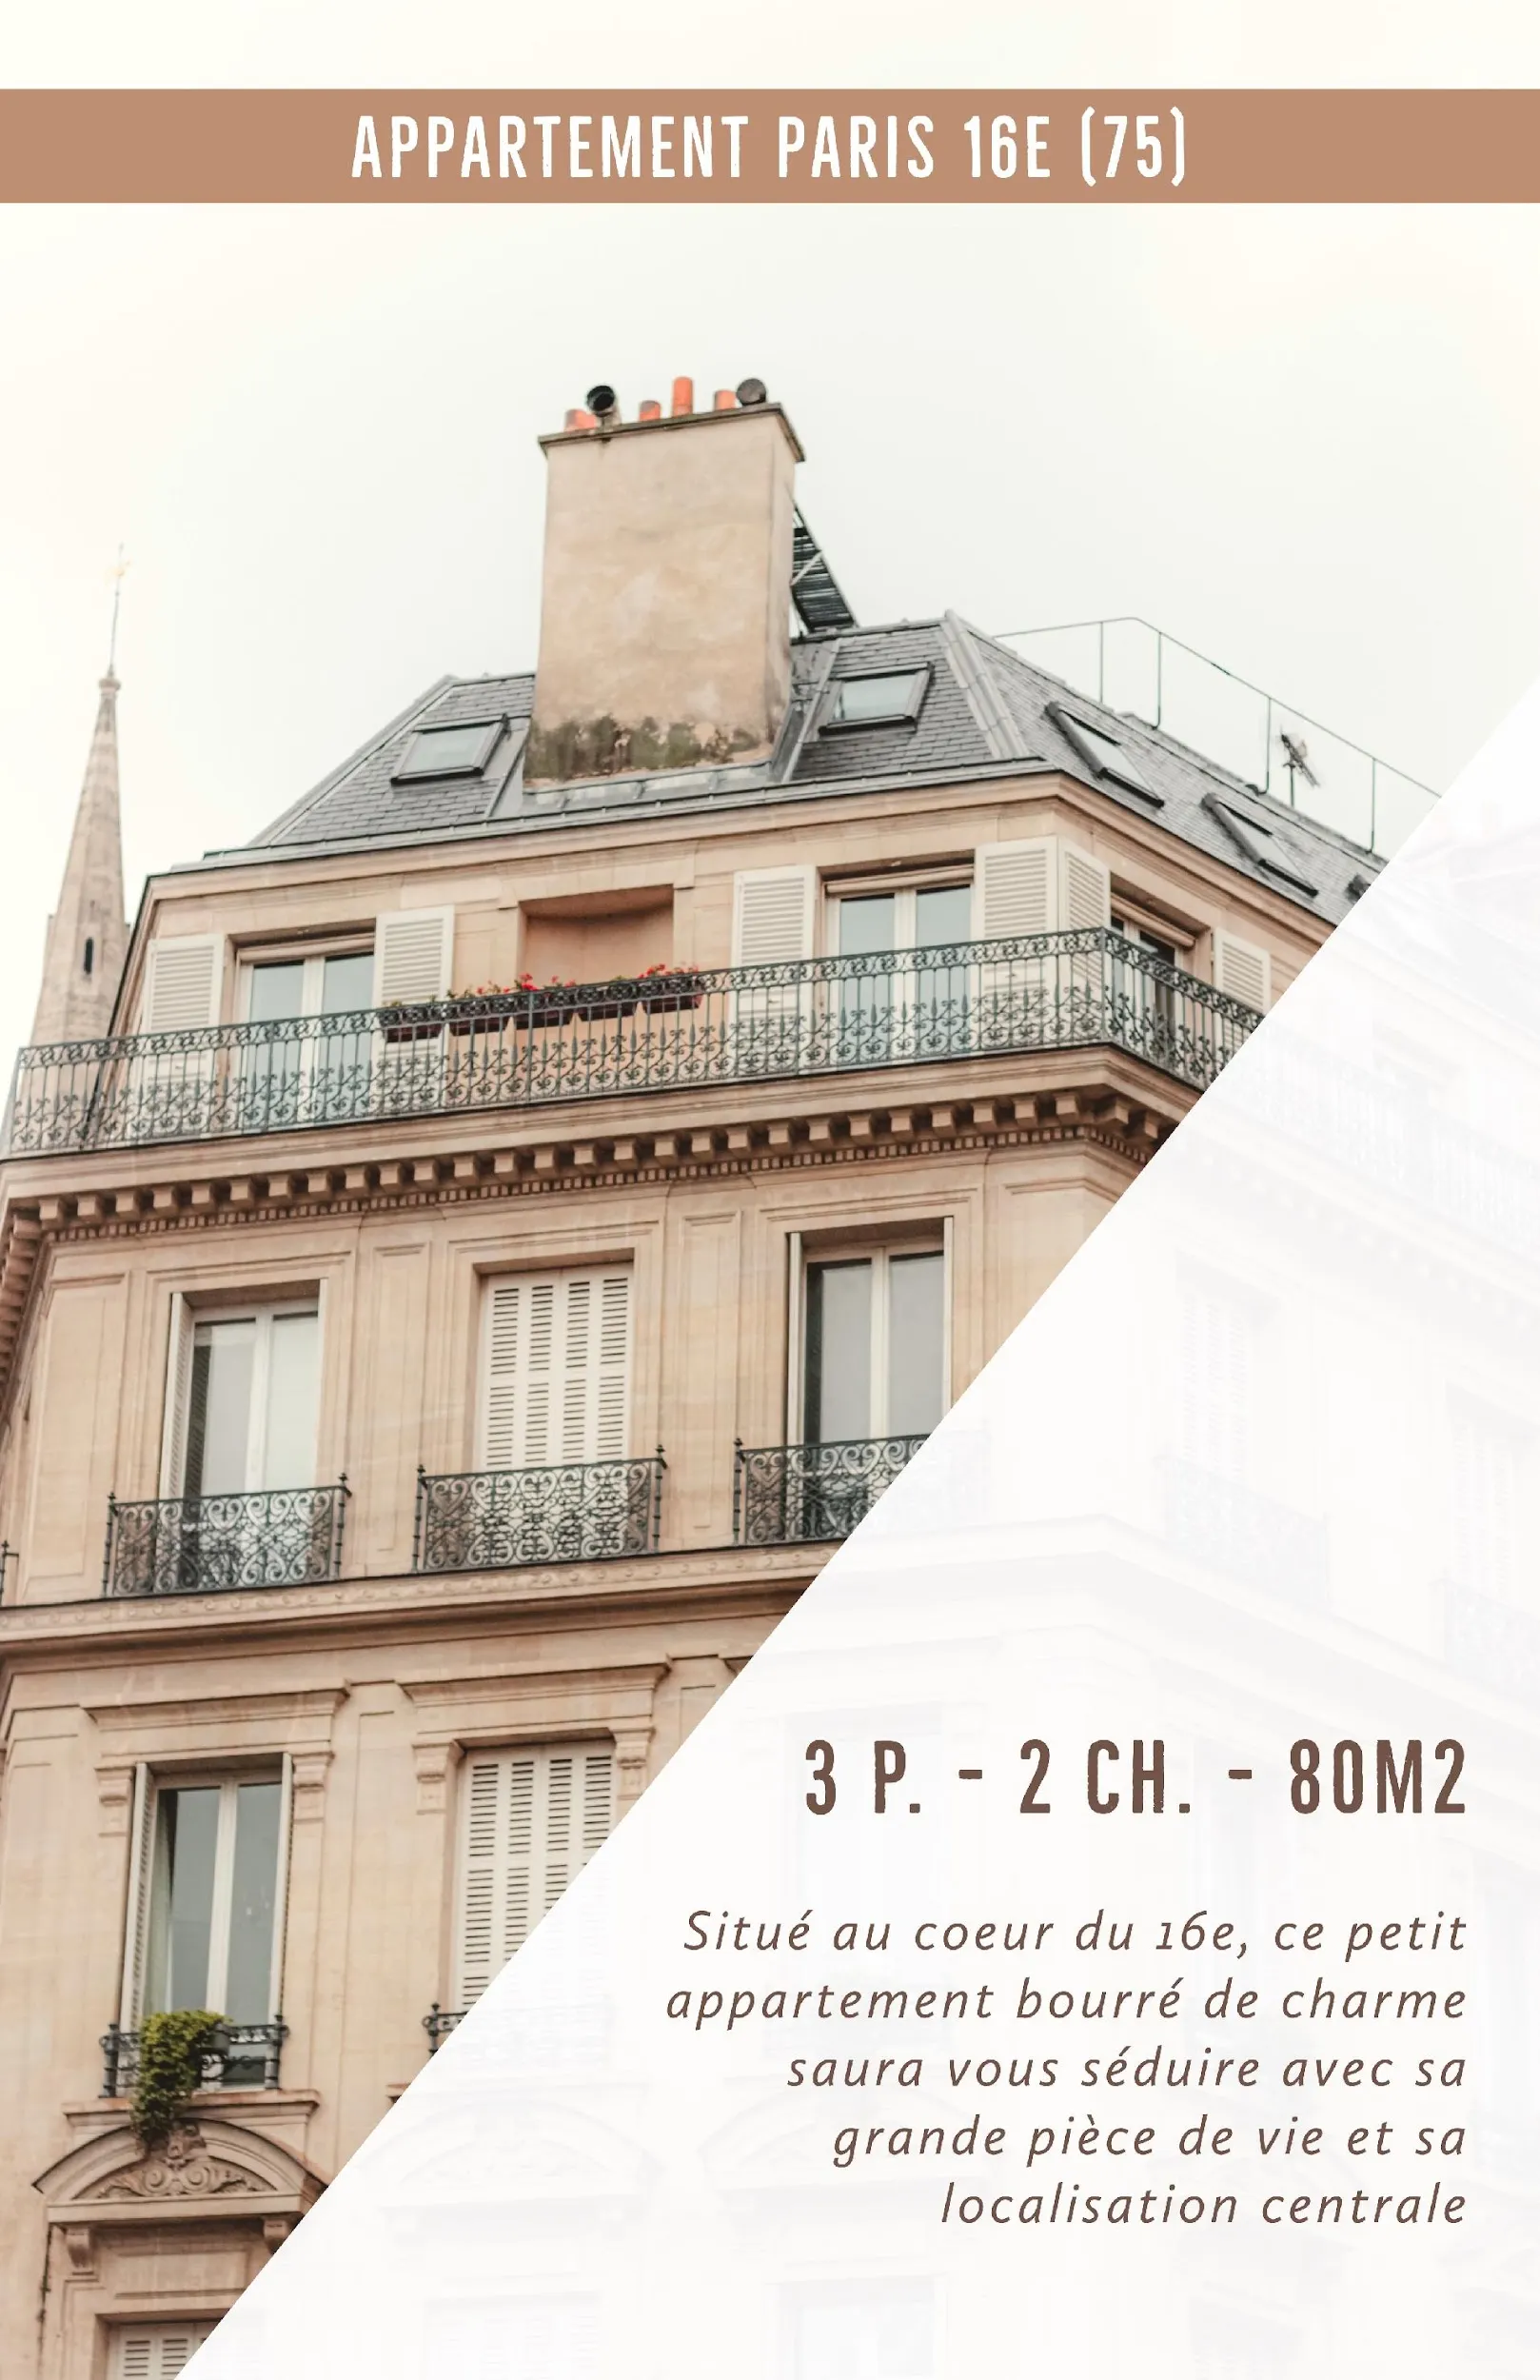 Brown Paris Apartment Building Rental Poster 